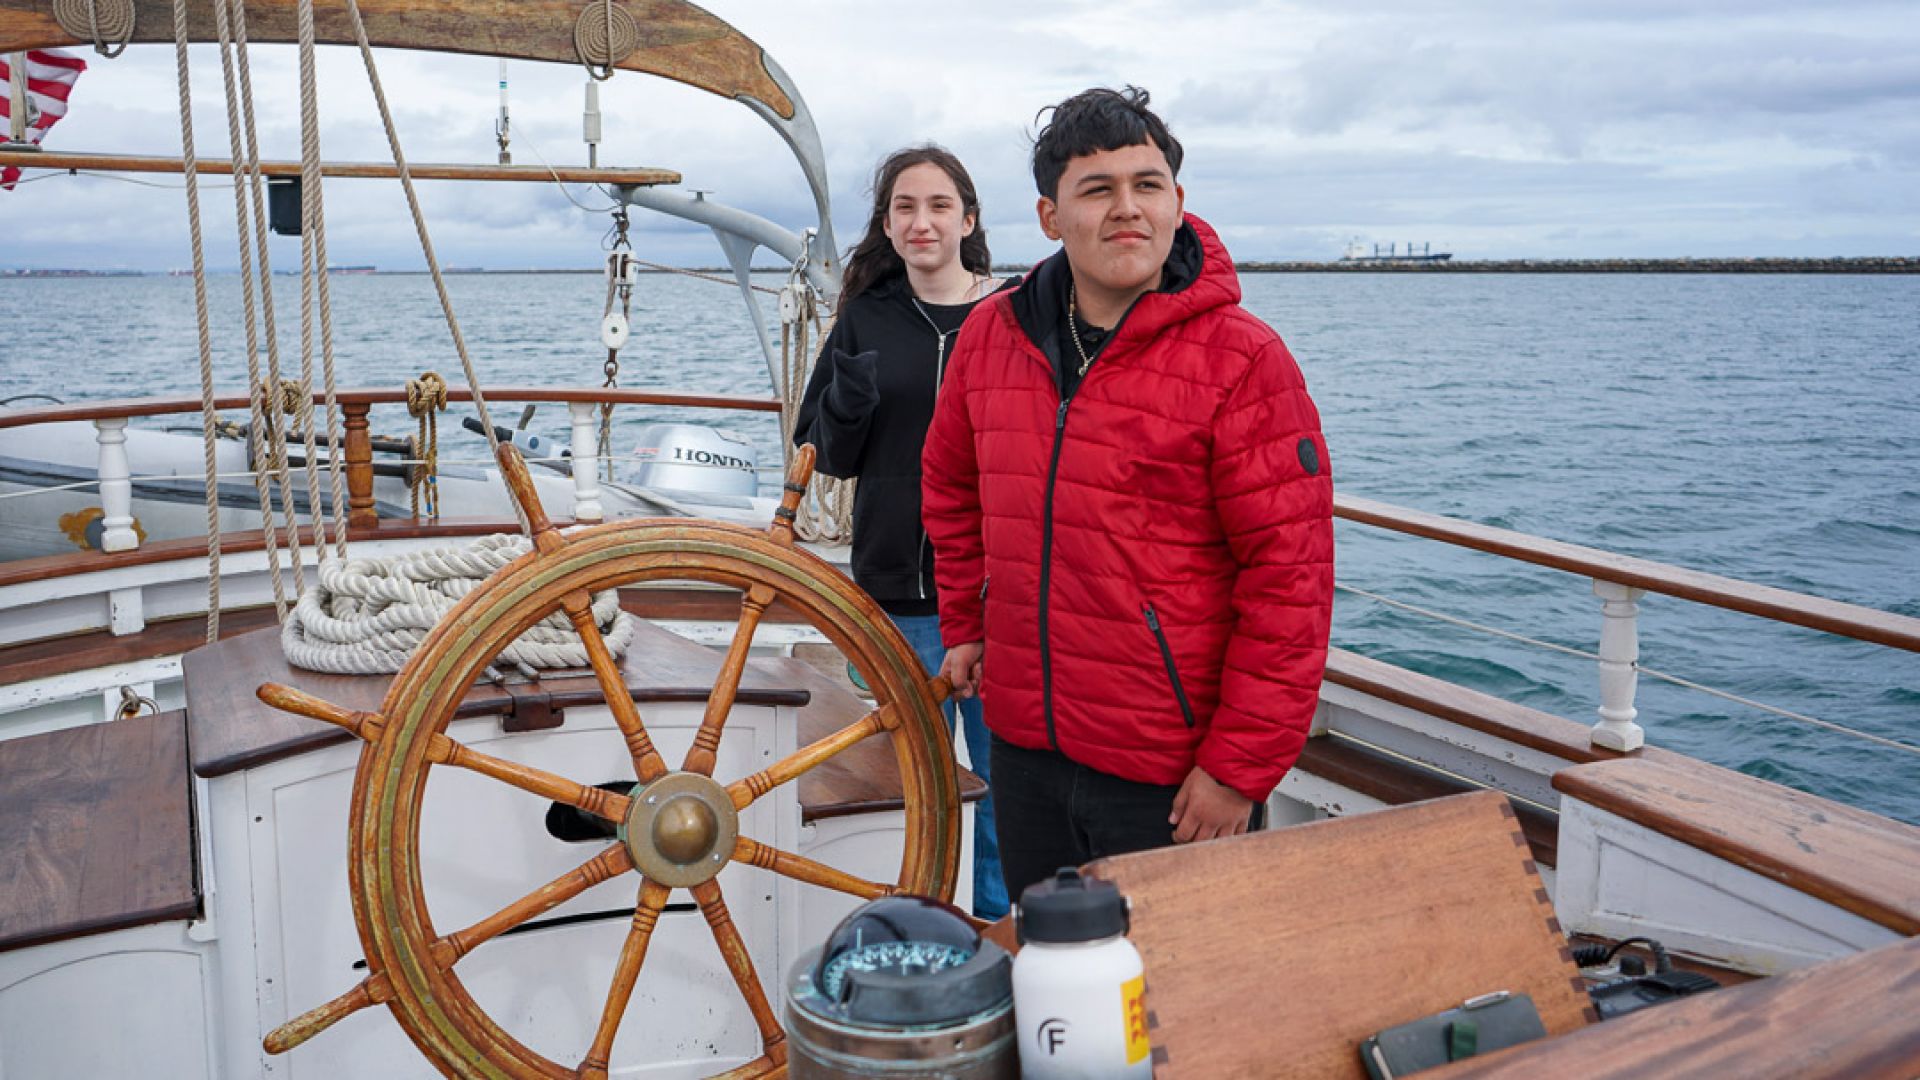 South Bay Students Set Sail